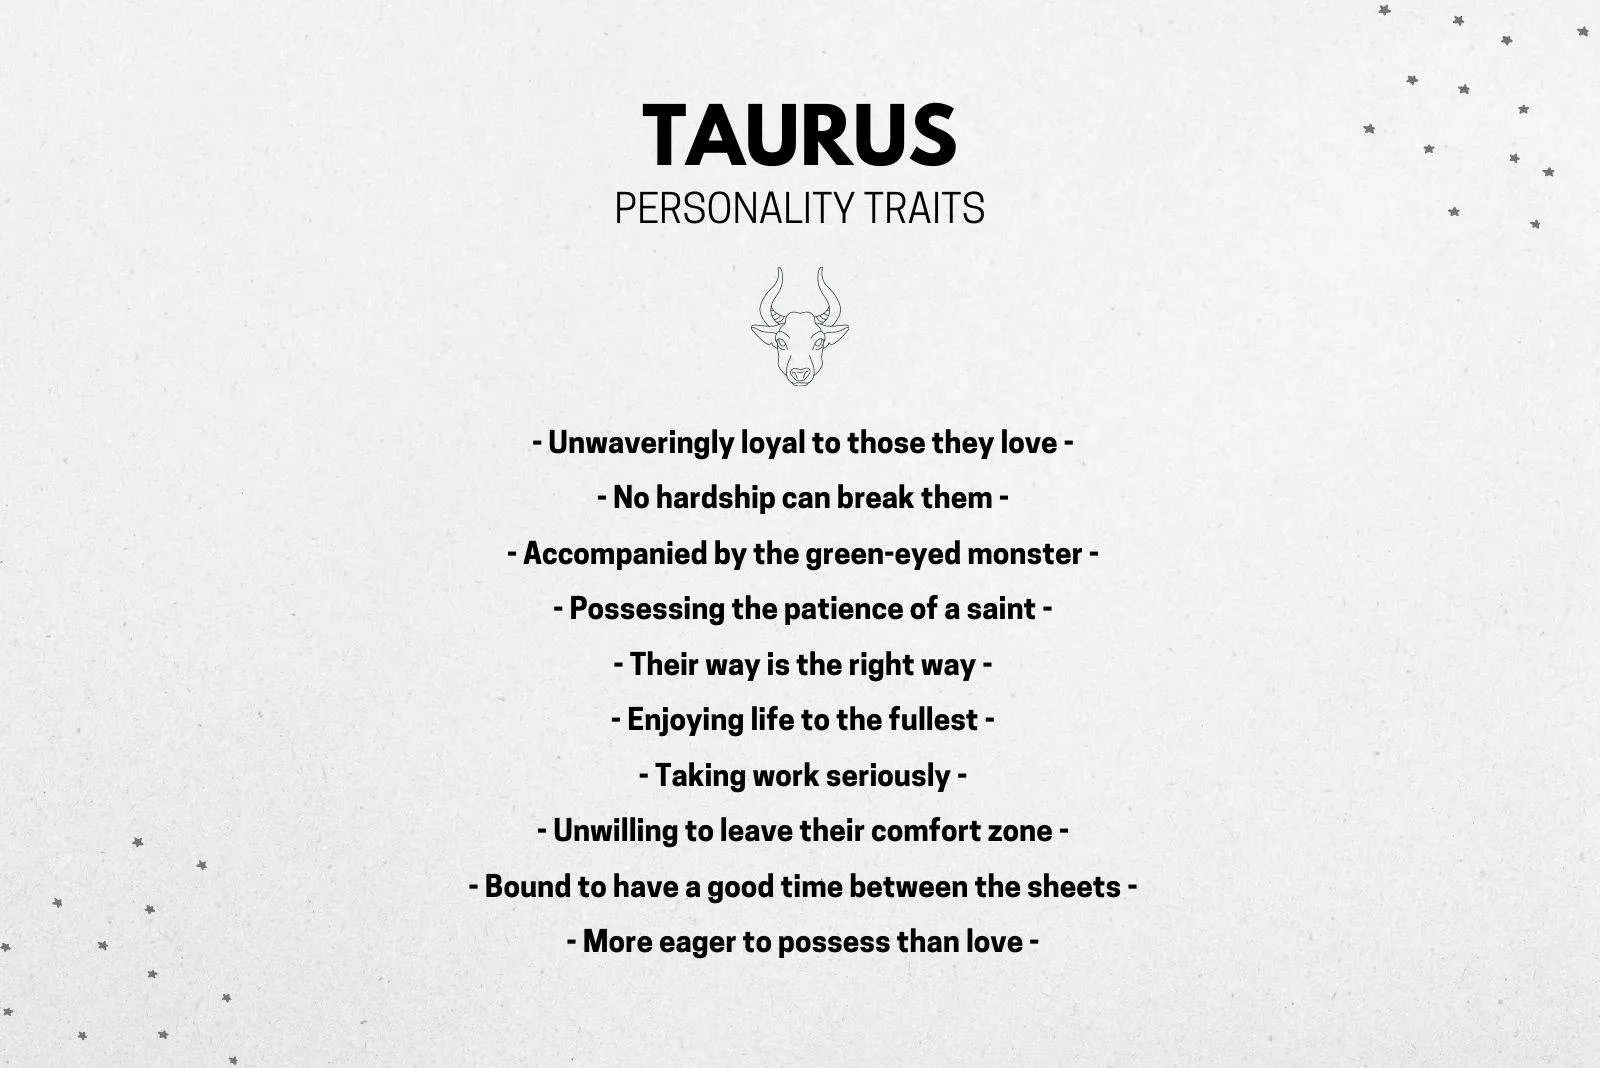 Taurus Men Possessive Of Partner